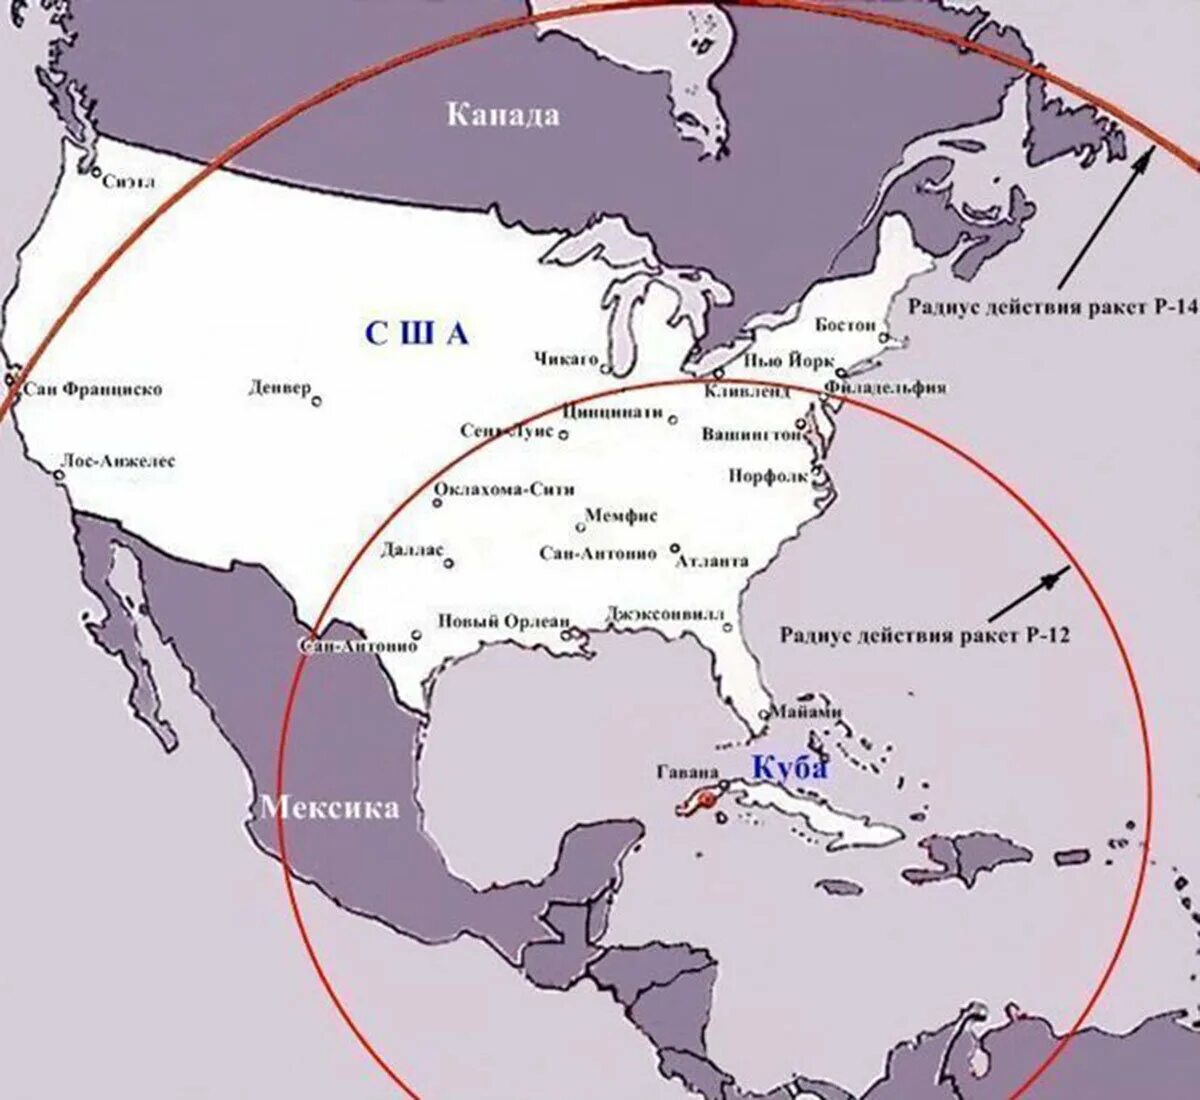 Карибский кризис ядерная угроза. Карибский кризис 1962 карта. Радиус действия советских ракет на Кубе. Карибский кризис 1962 размещение ракет в Турции. Карибский кризис 1962 операция Анадырь.